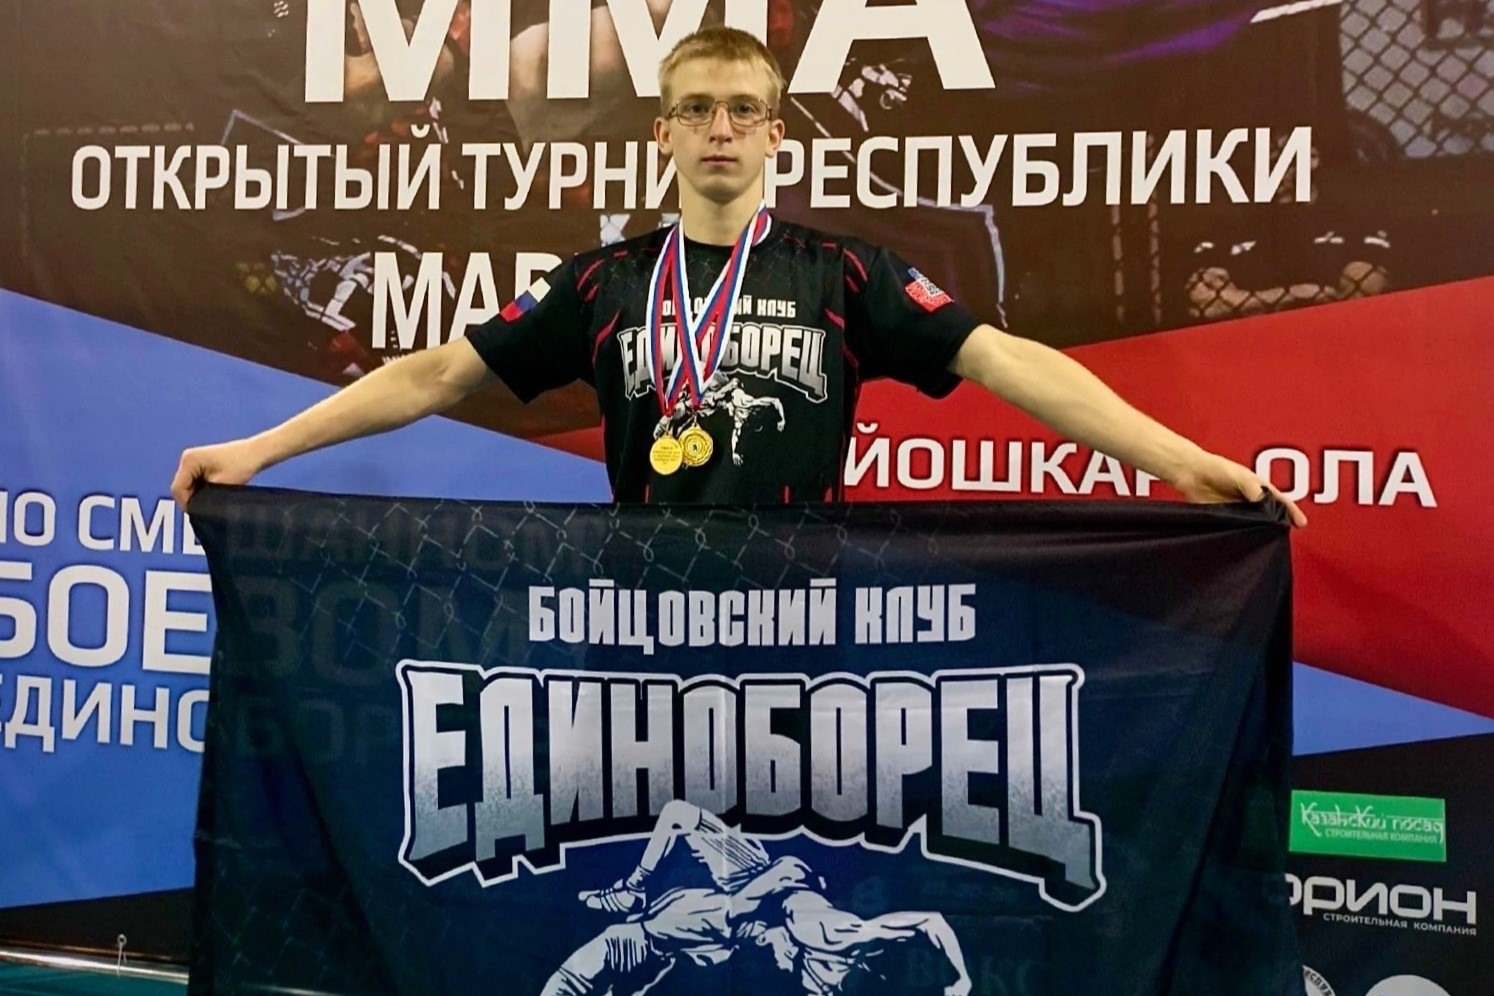 Георгий Чураев выиграл республиканский турнир ММА